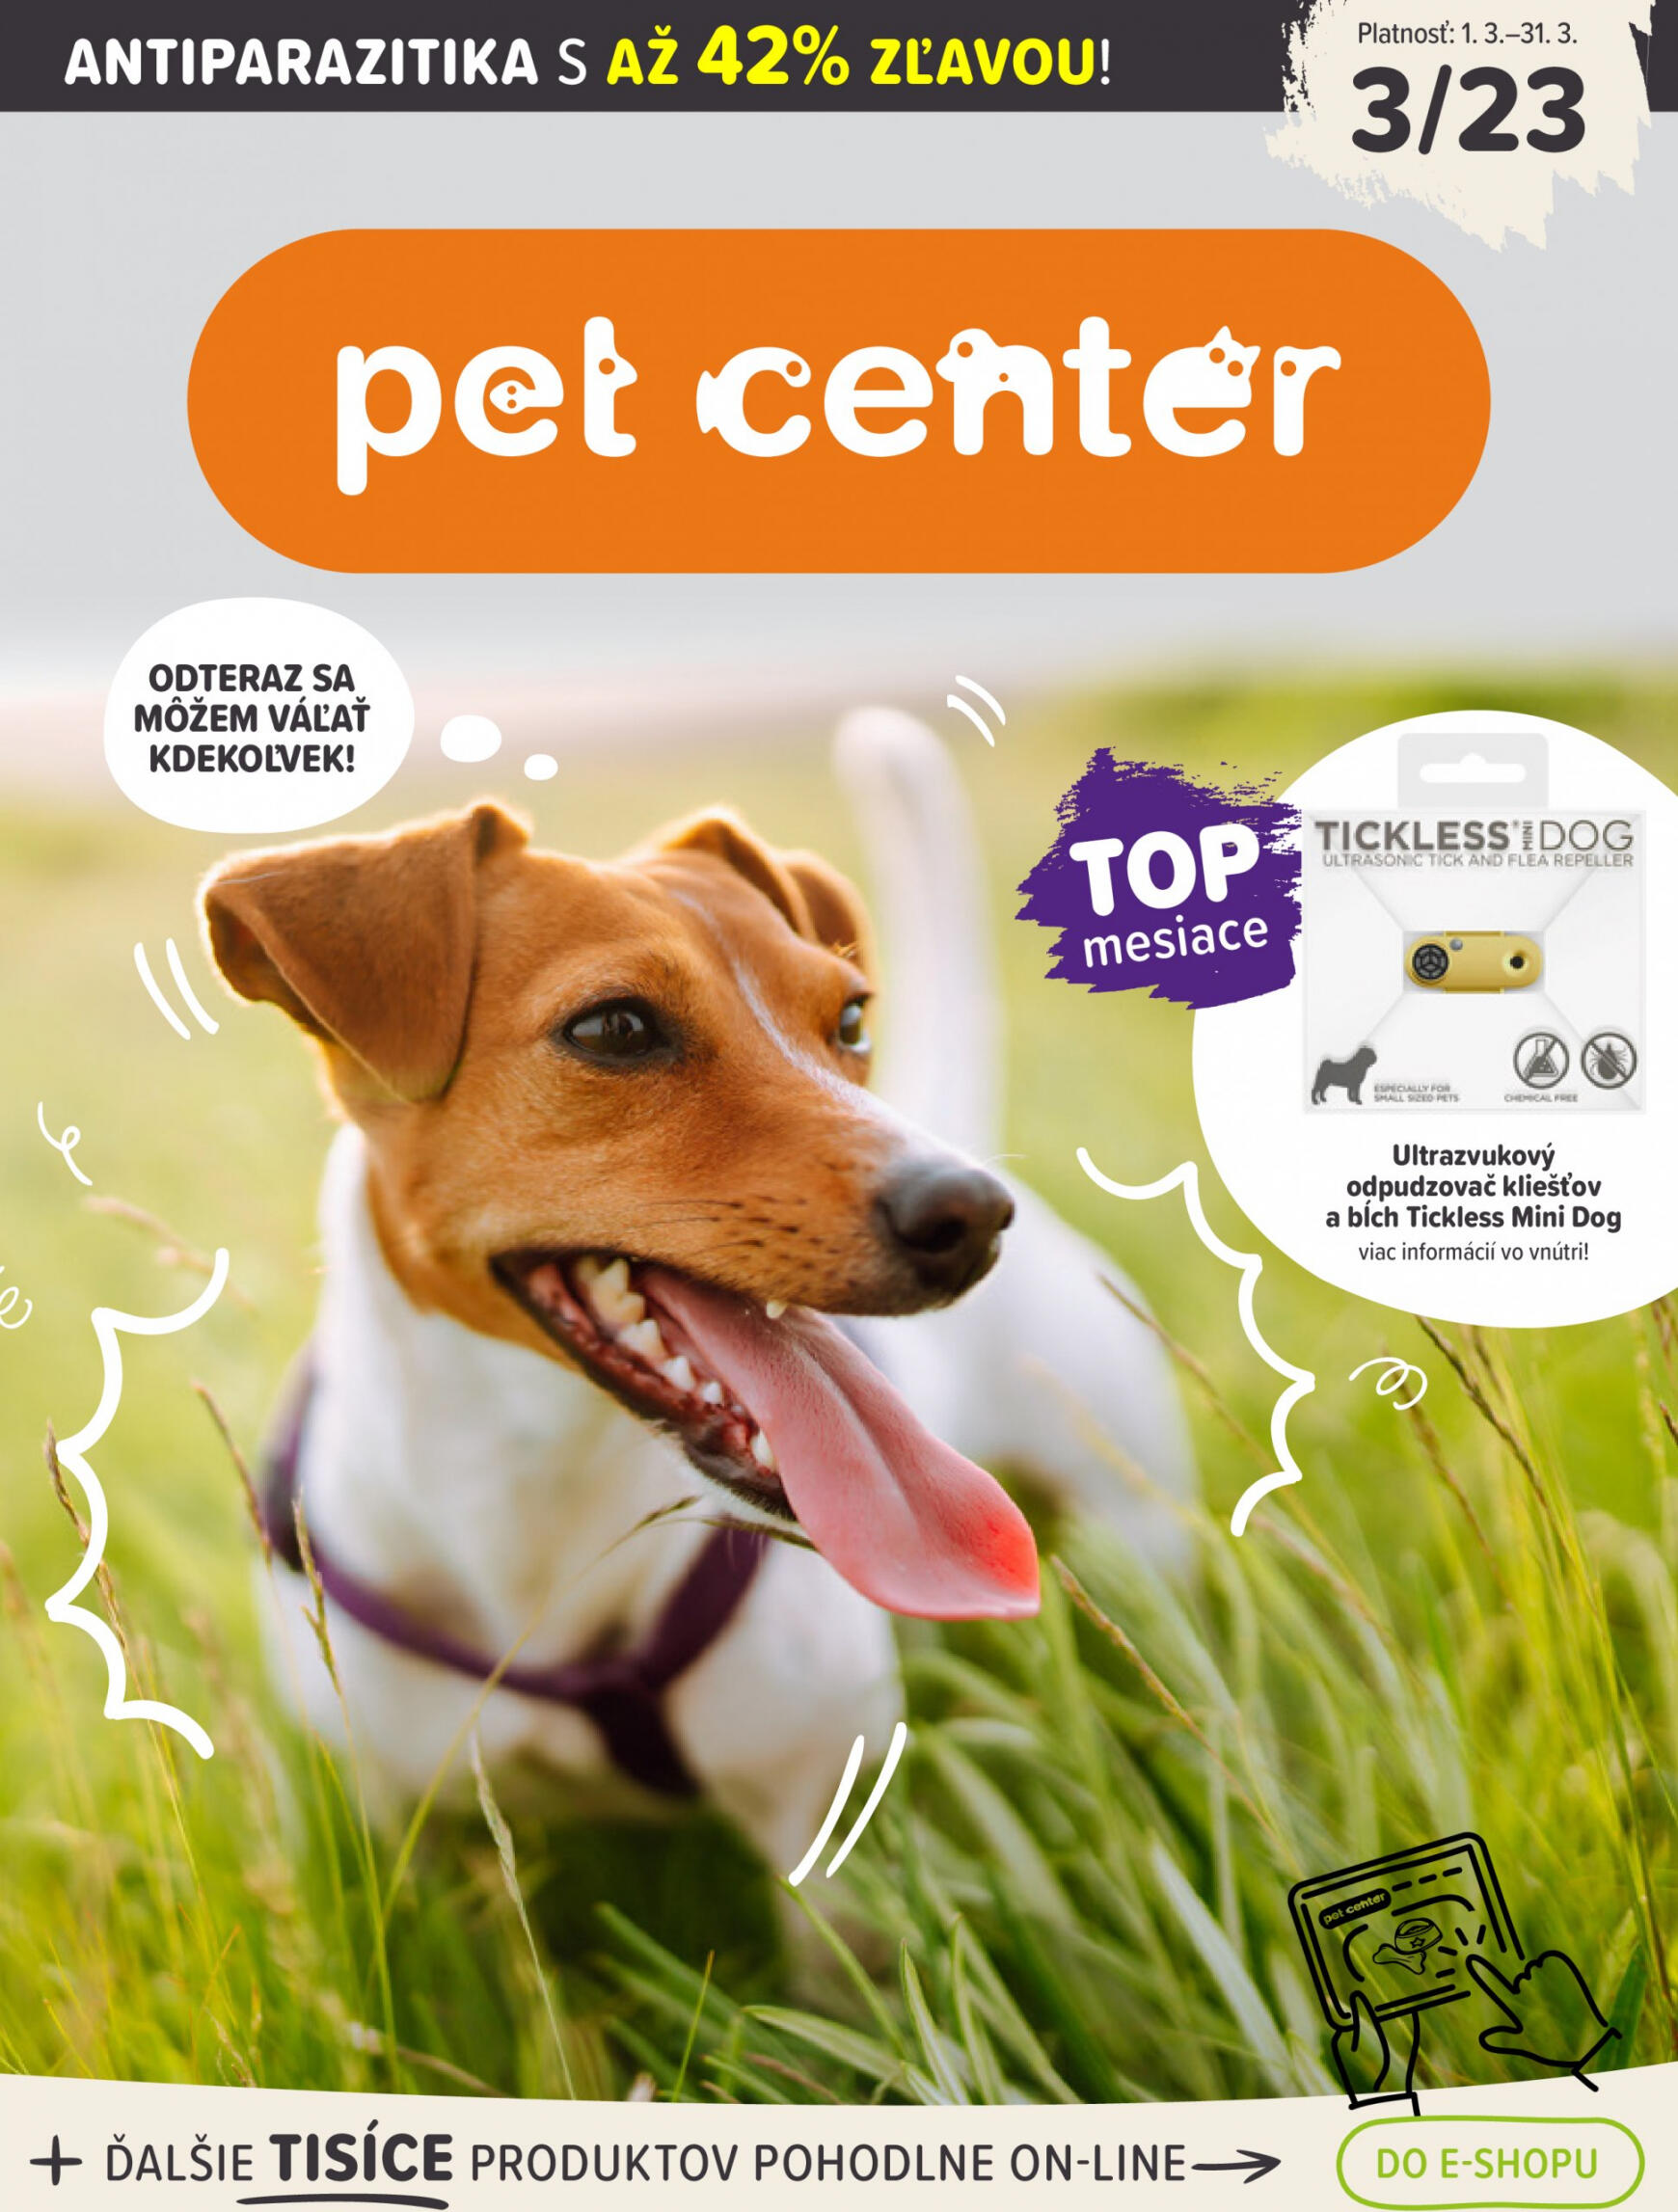 petcenter - Pet Center